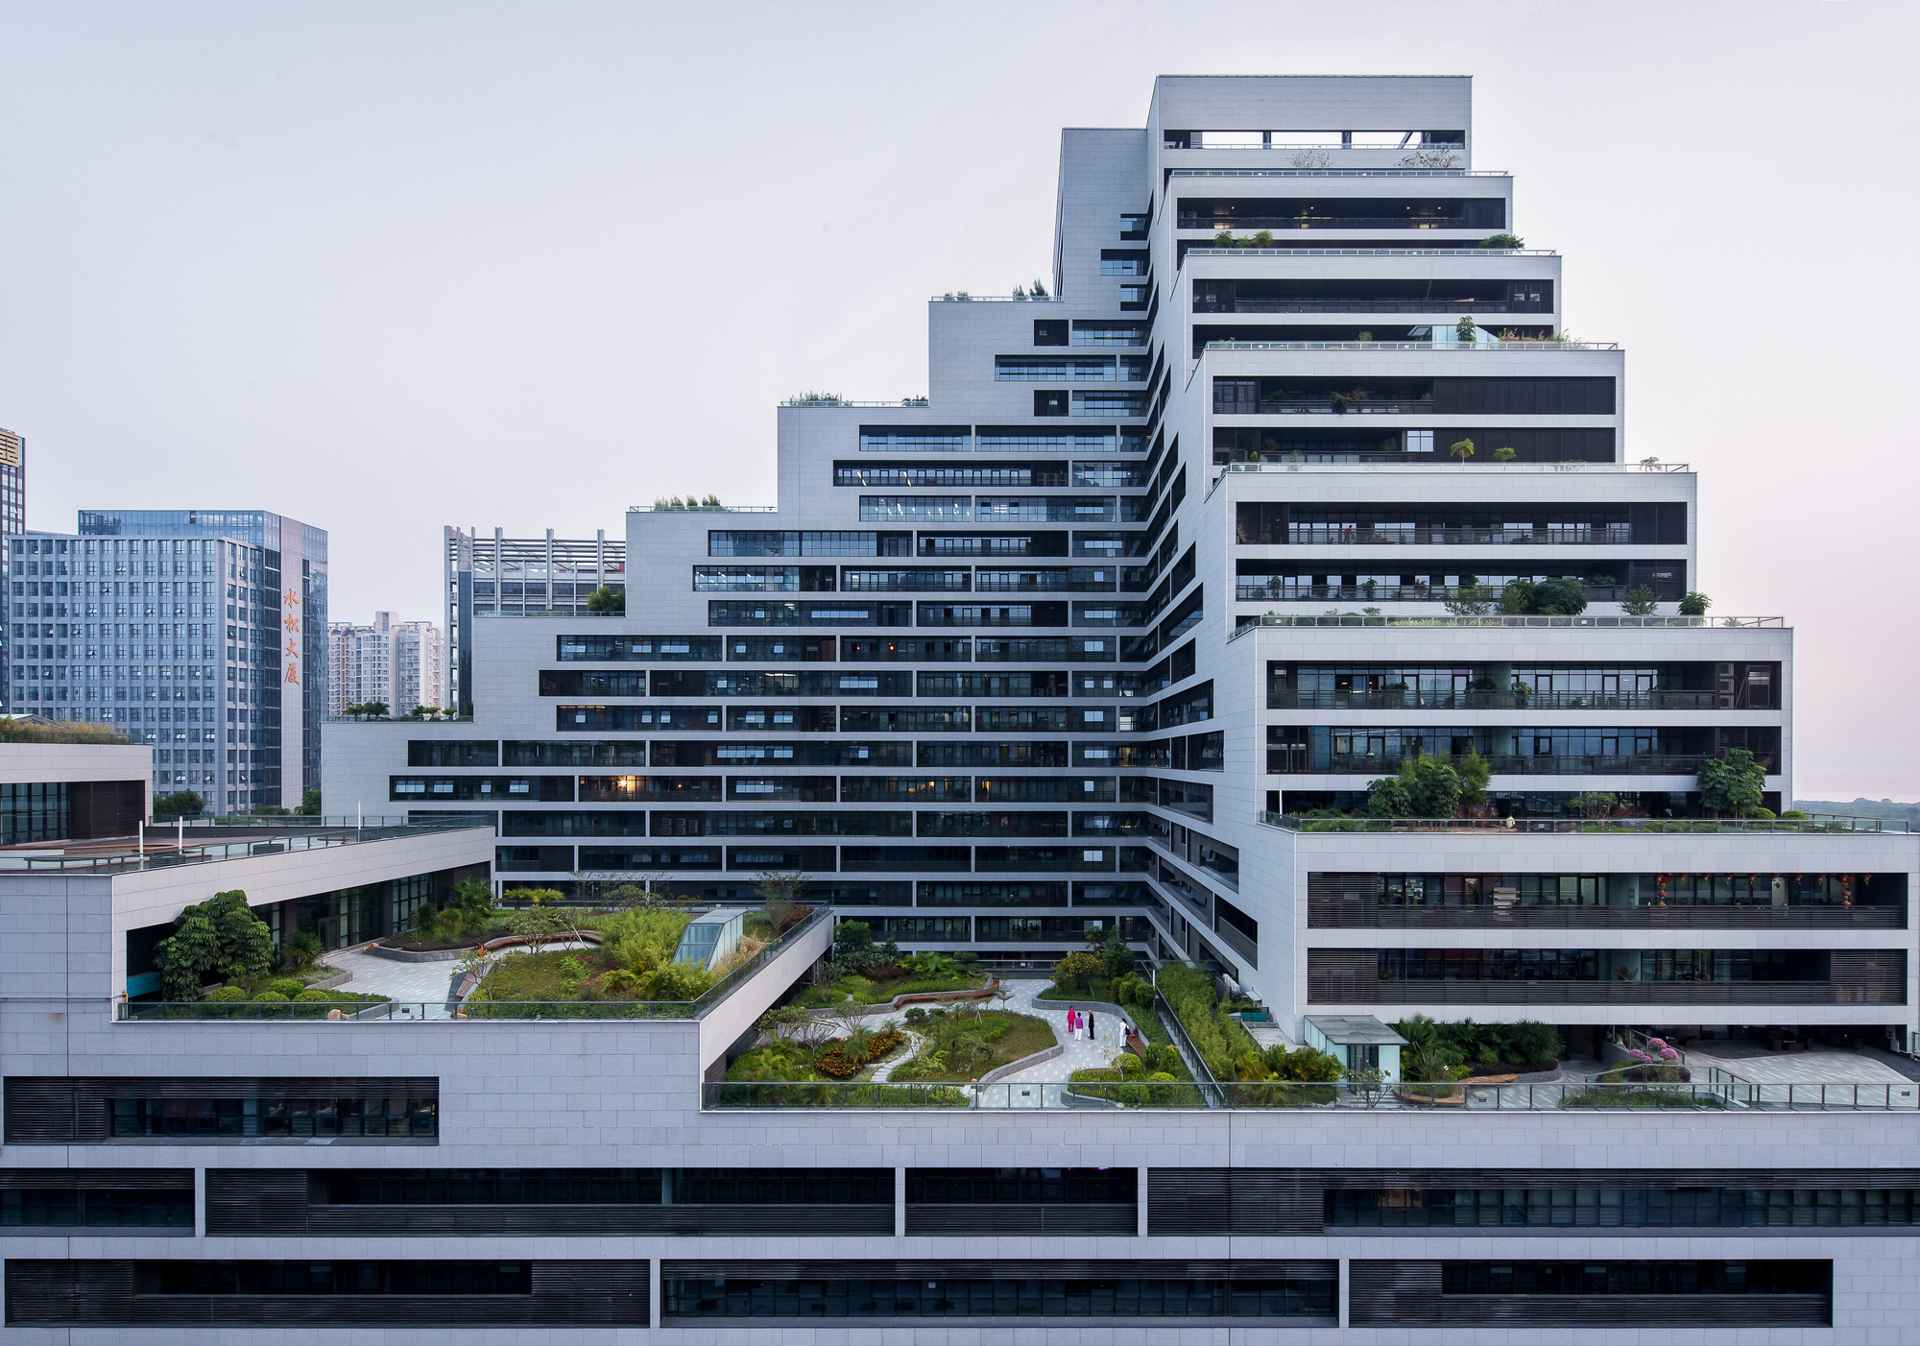 Vista panoramica del edificio Shenye TaiRan, China